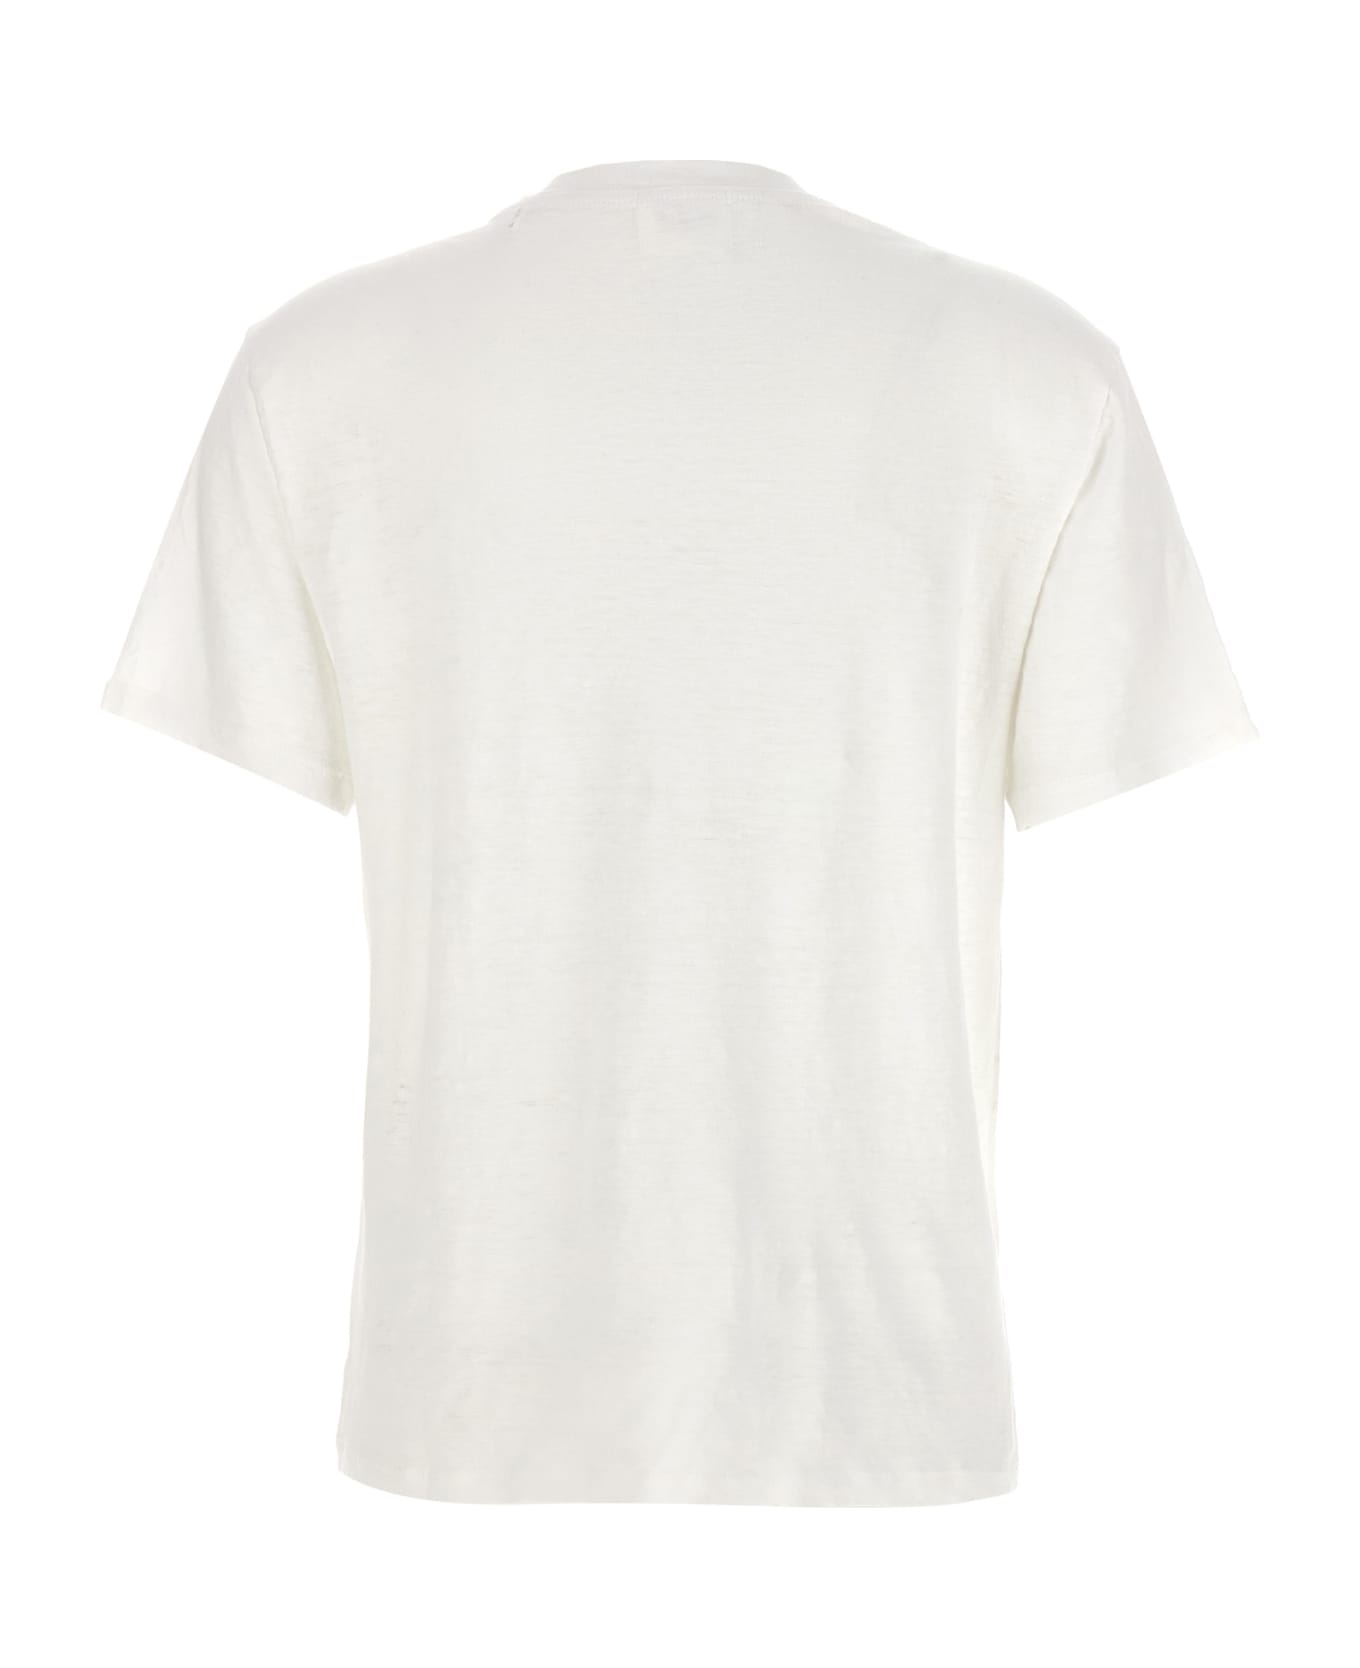 Marant Étoile 'zewel' T-shirt - White/Black